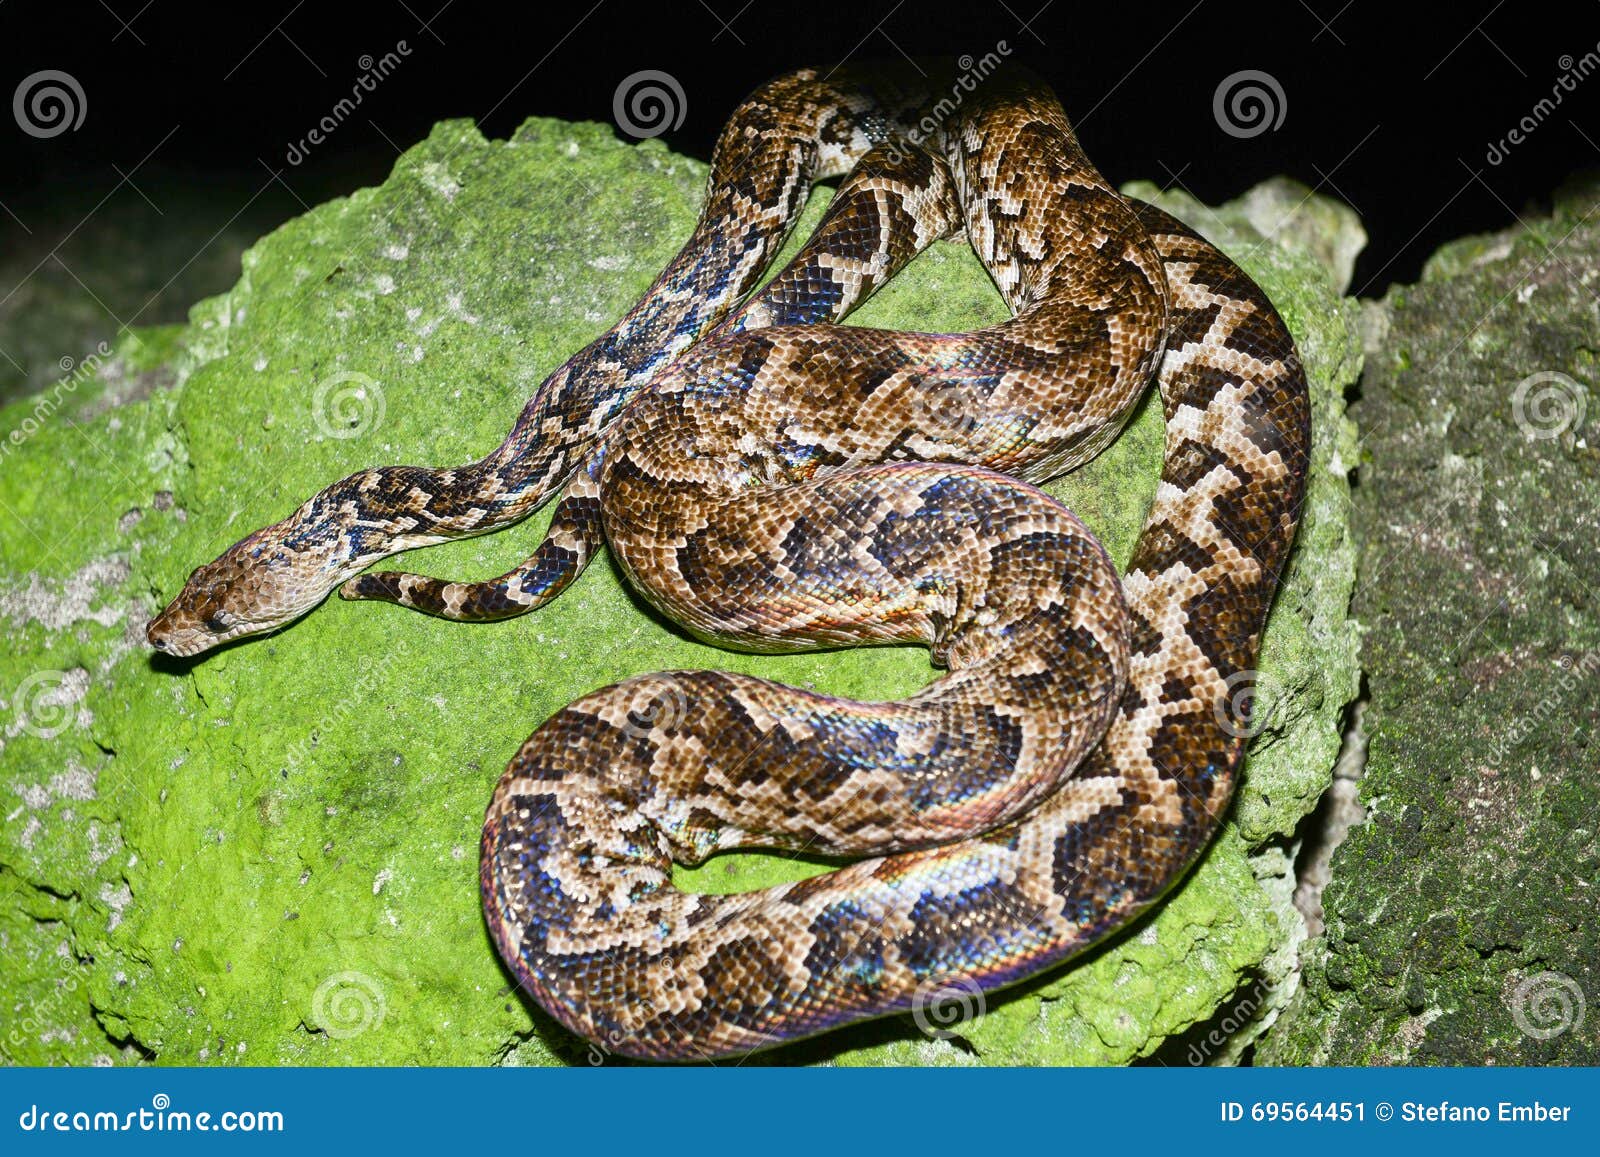 maja de santamaria snake on the forest of giron